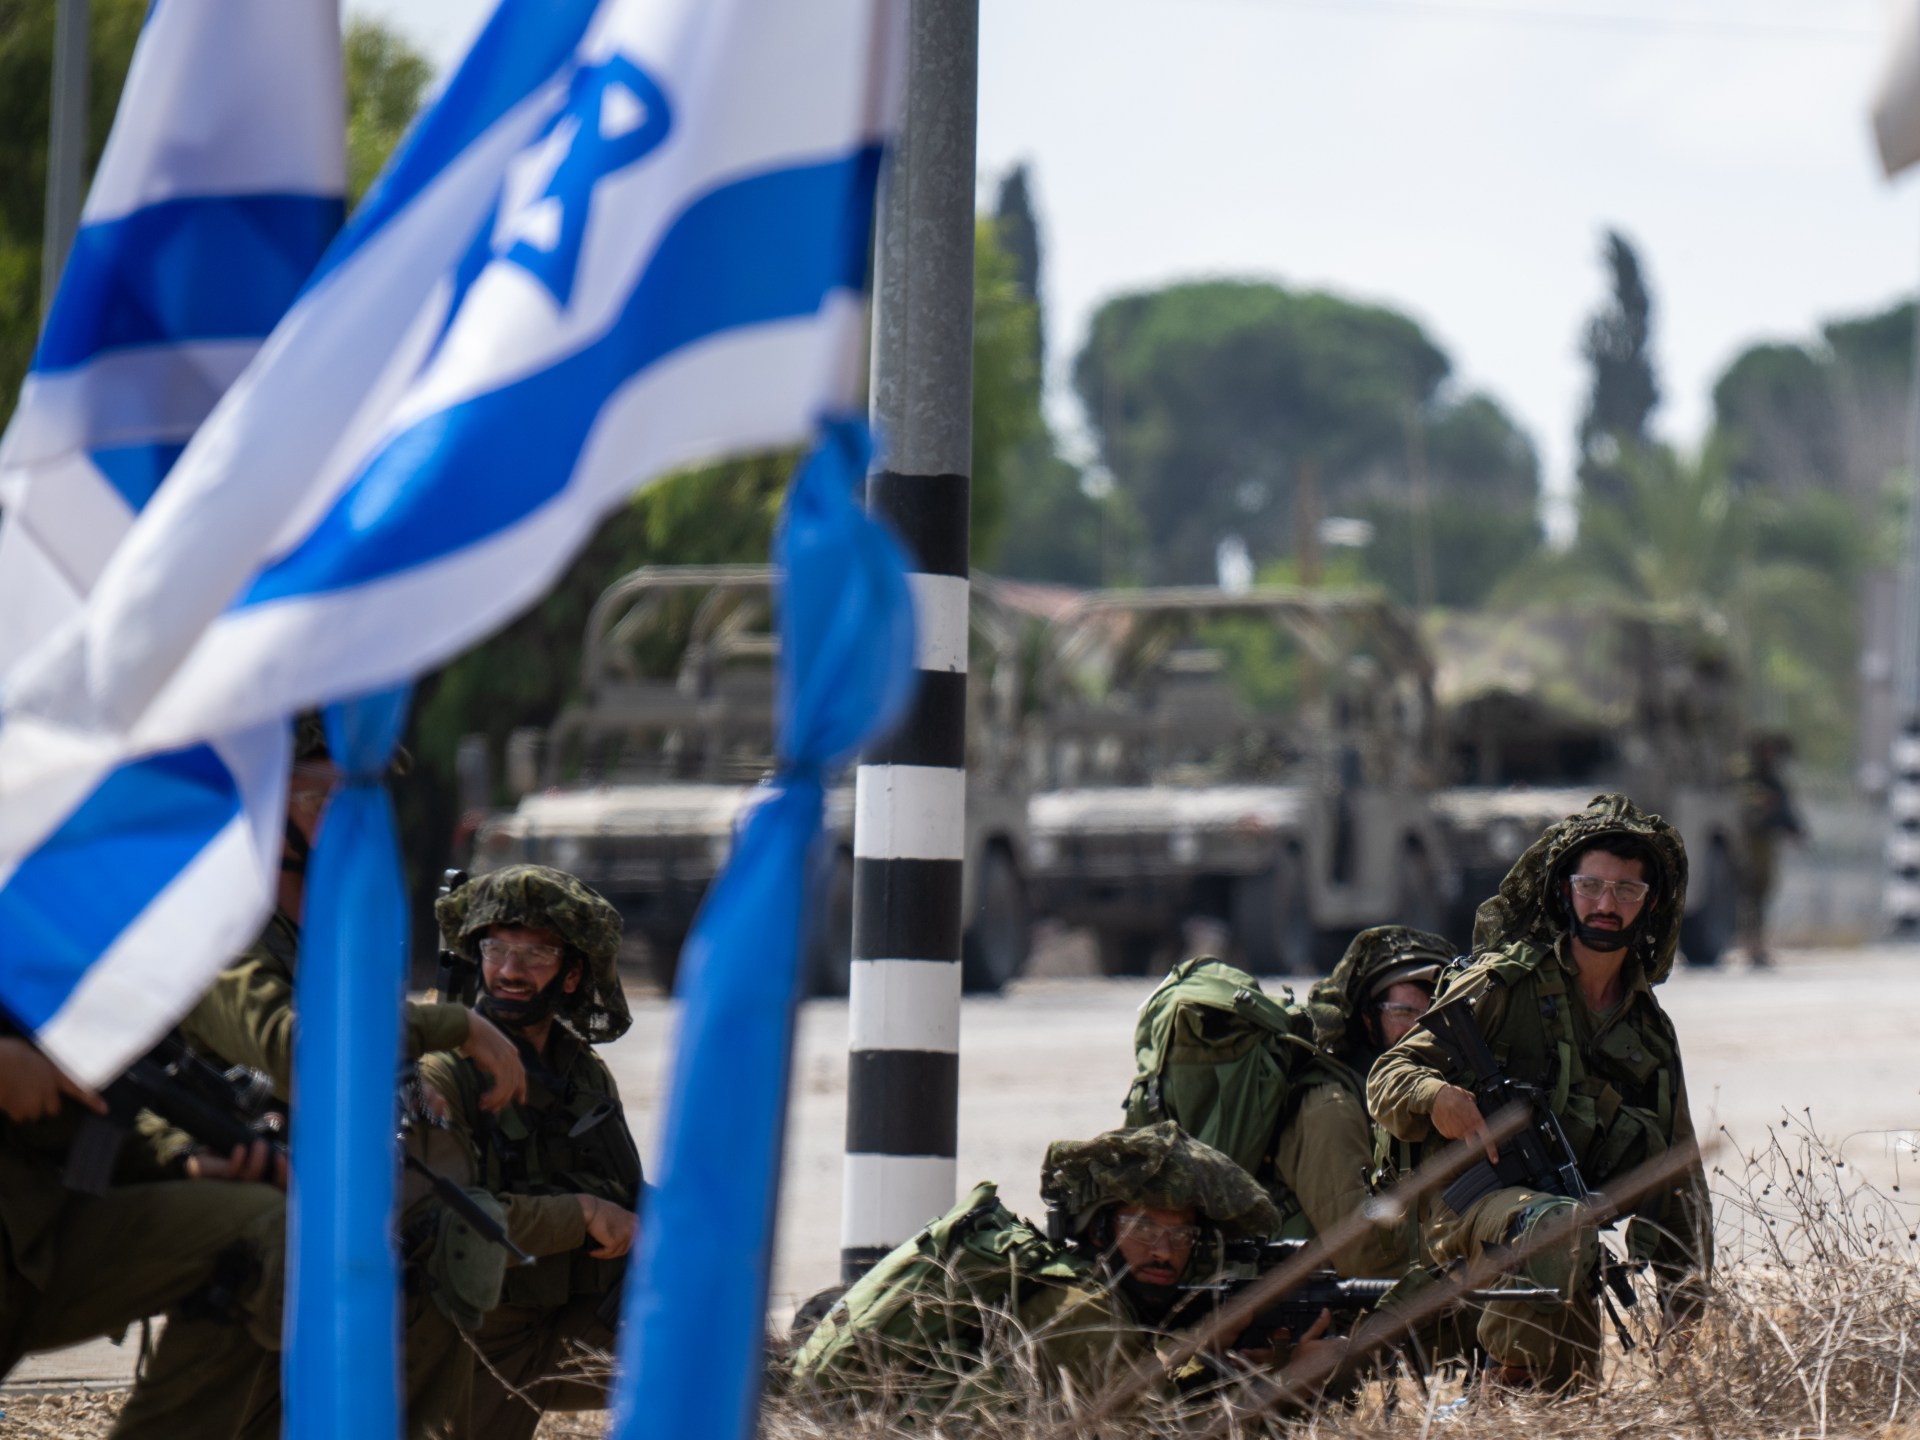 عدد كبير من الفرنسيين غادروا للقتال مع إسرائيل في حربها على غزة | أخبار سياسة – البوكس نيوز